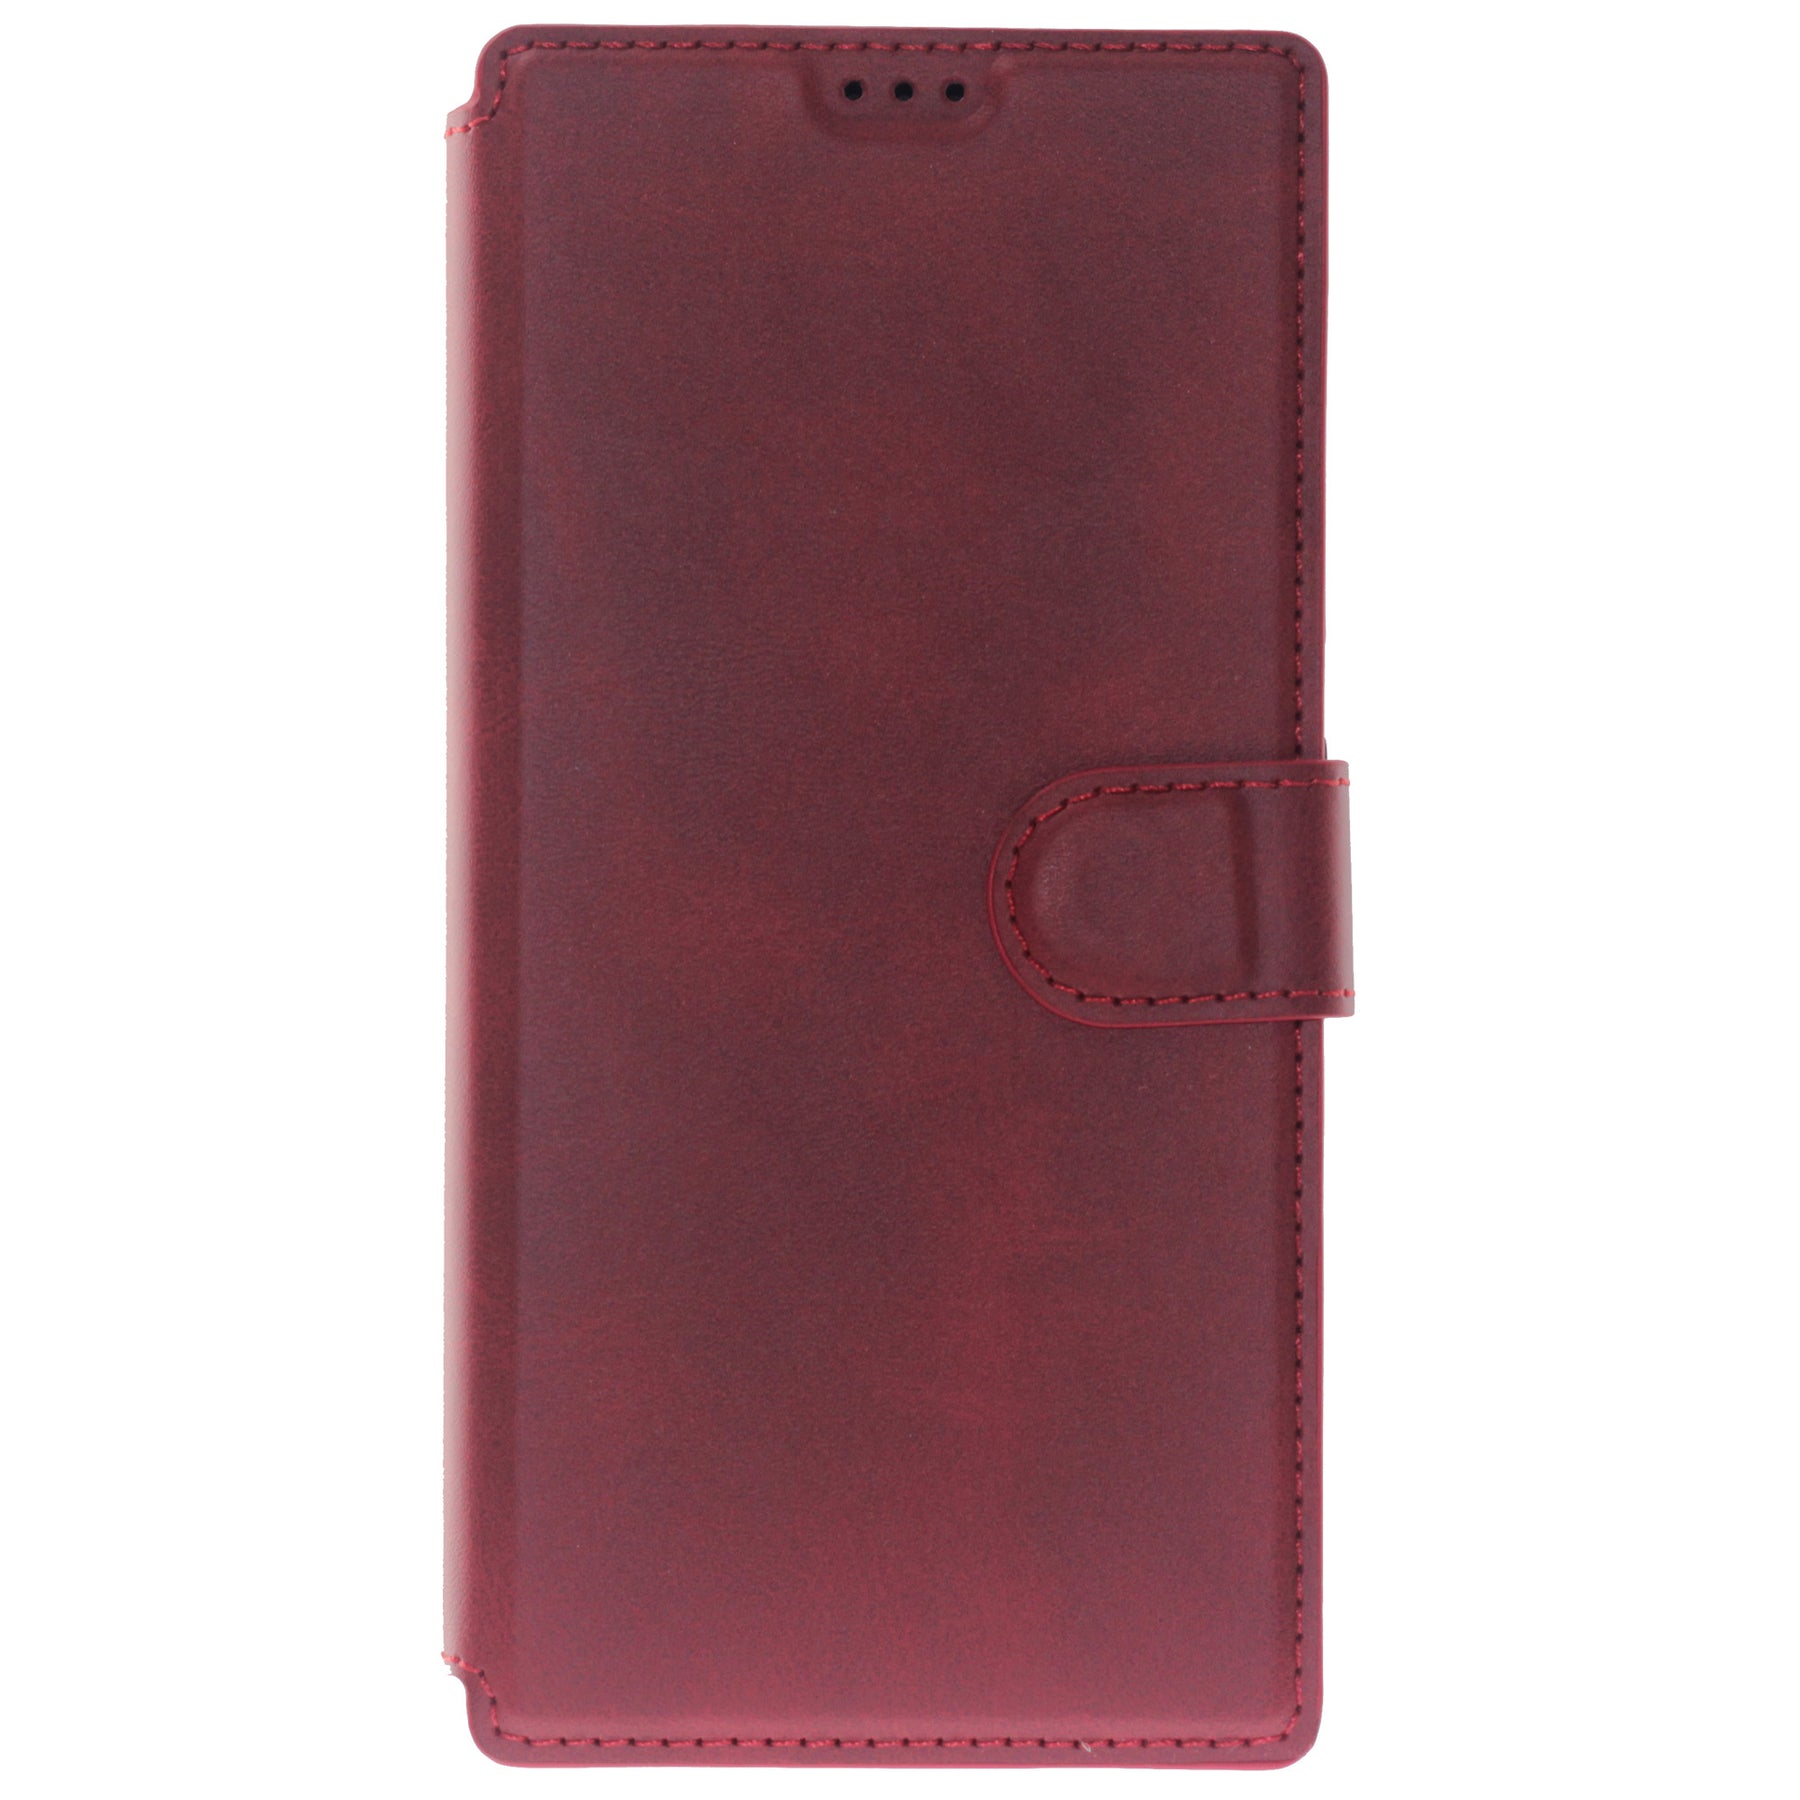 Samsung A90 (5G) red wallet case